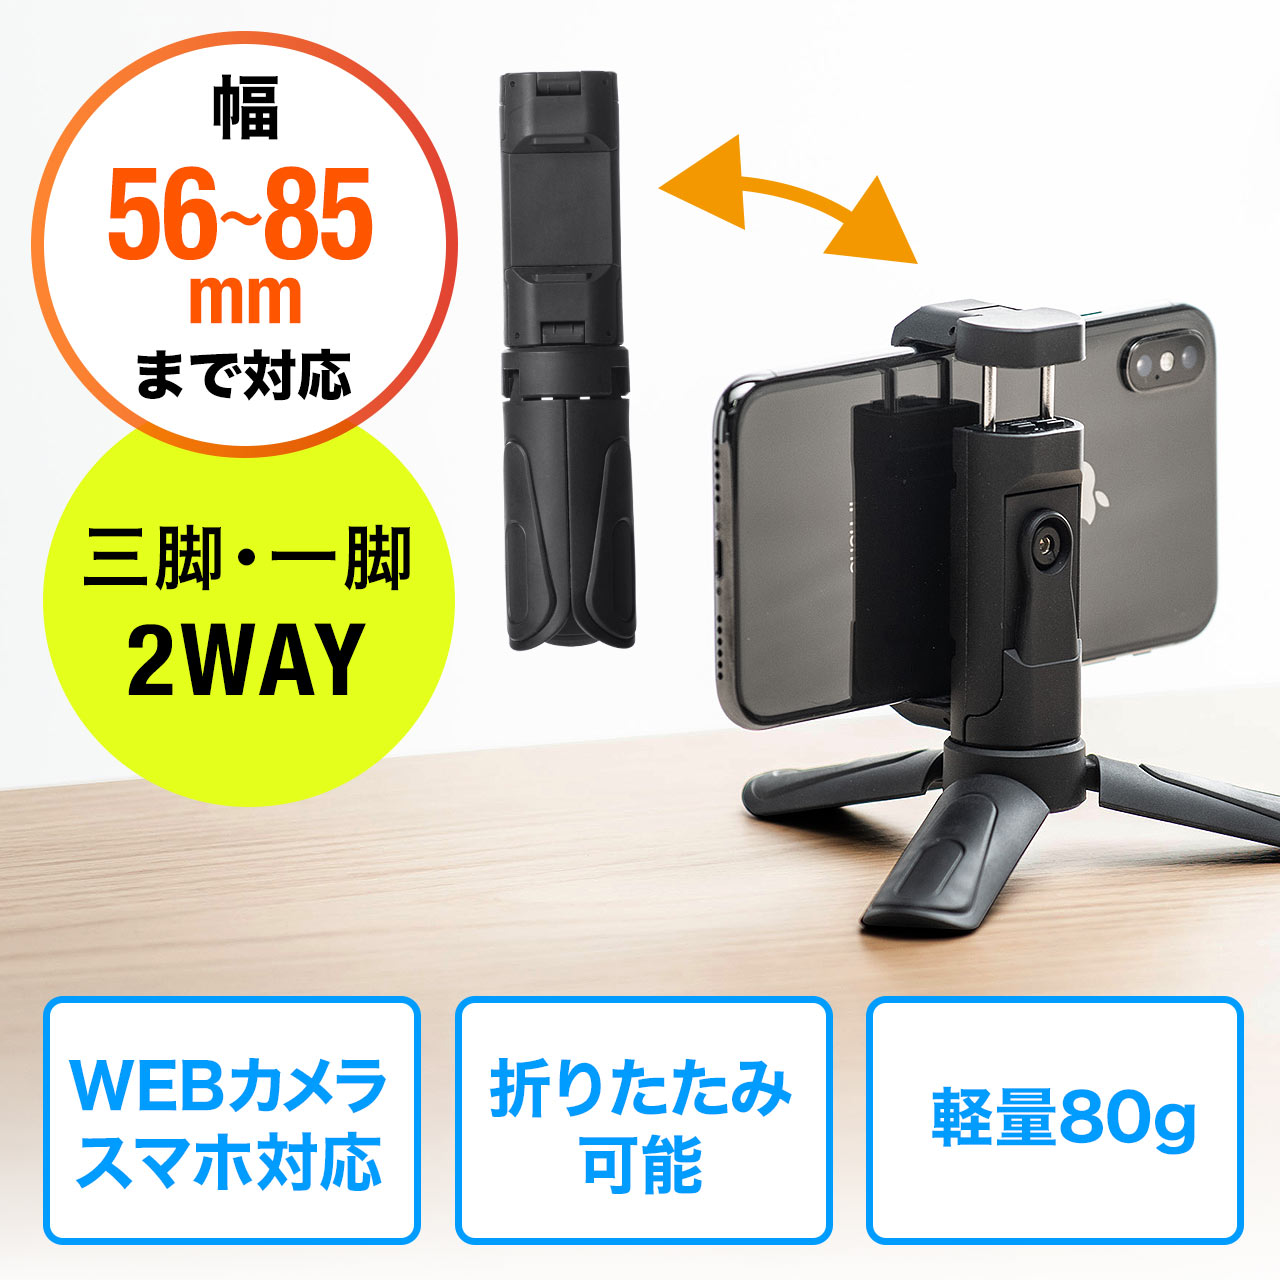 大好評❗️三脚 スマホ 4段階伸縮 軽量 iphone 360°回転可能 カメラ